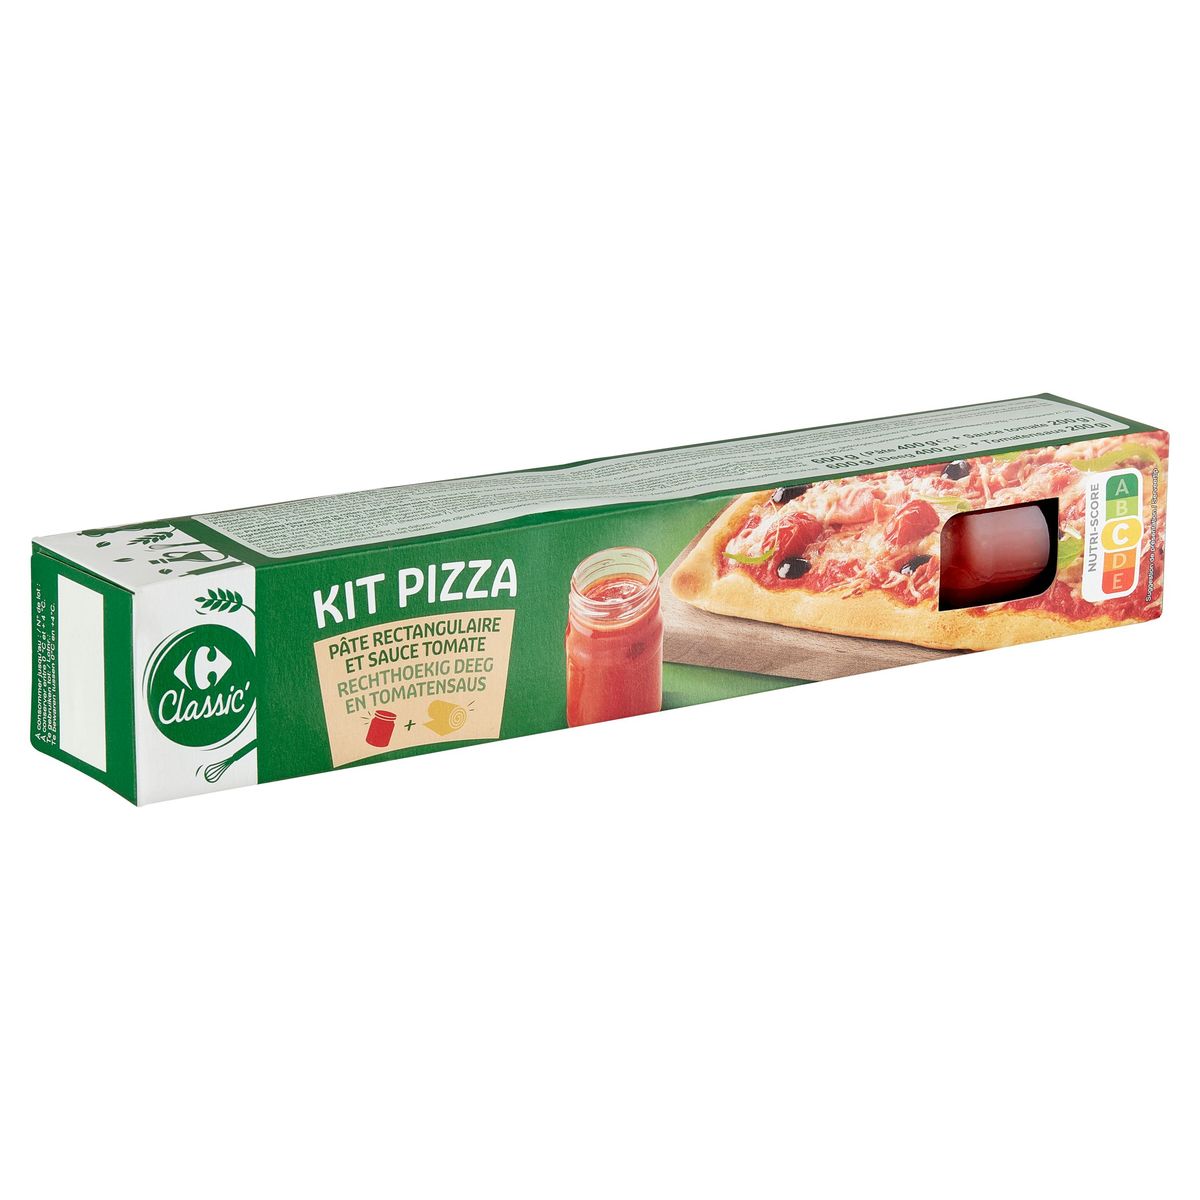 Carrefour Classic' Kit Pizza Pâte Rectangulaire et Sauce Tomate 600 g